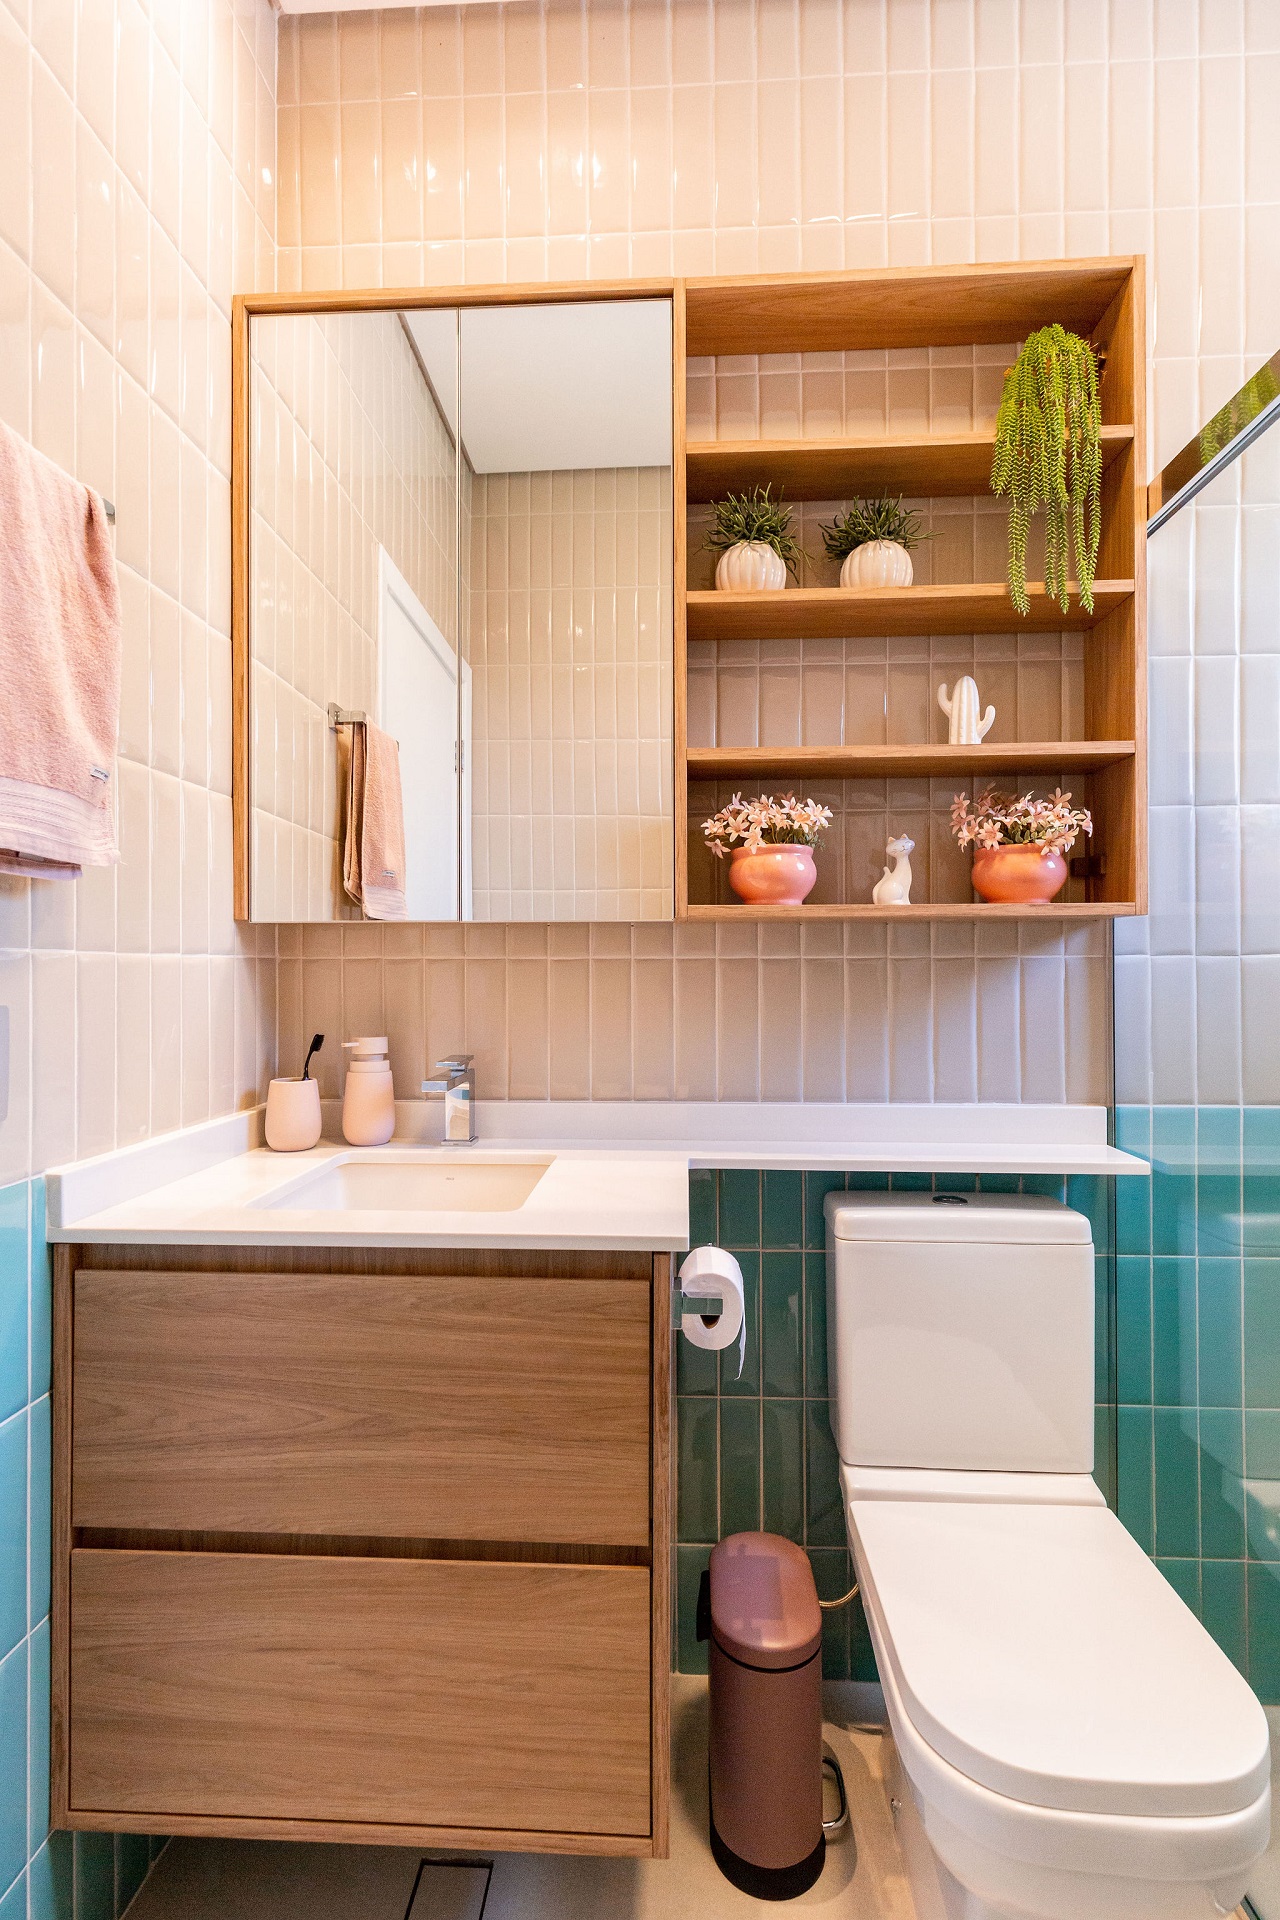 Banheiro pequeno com revestimento em rosa e verde nas paredes